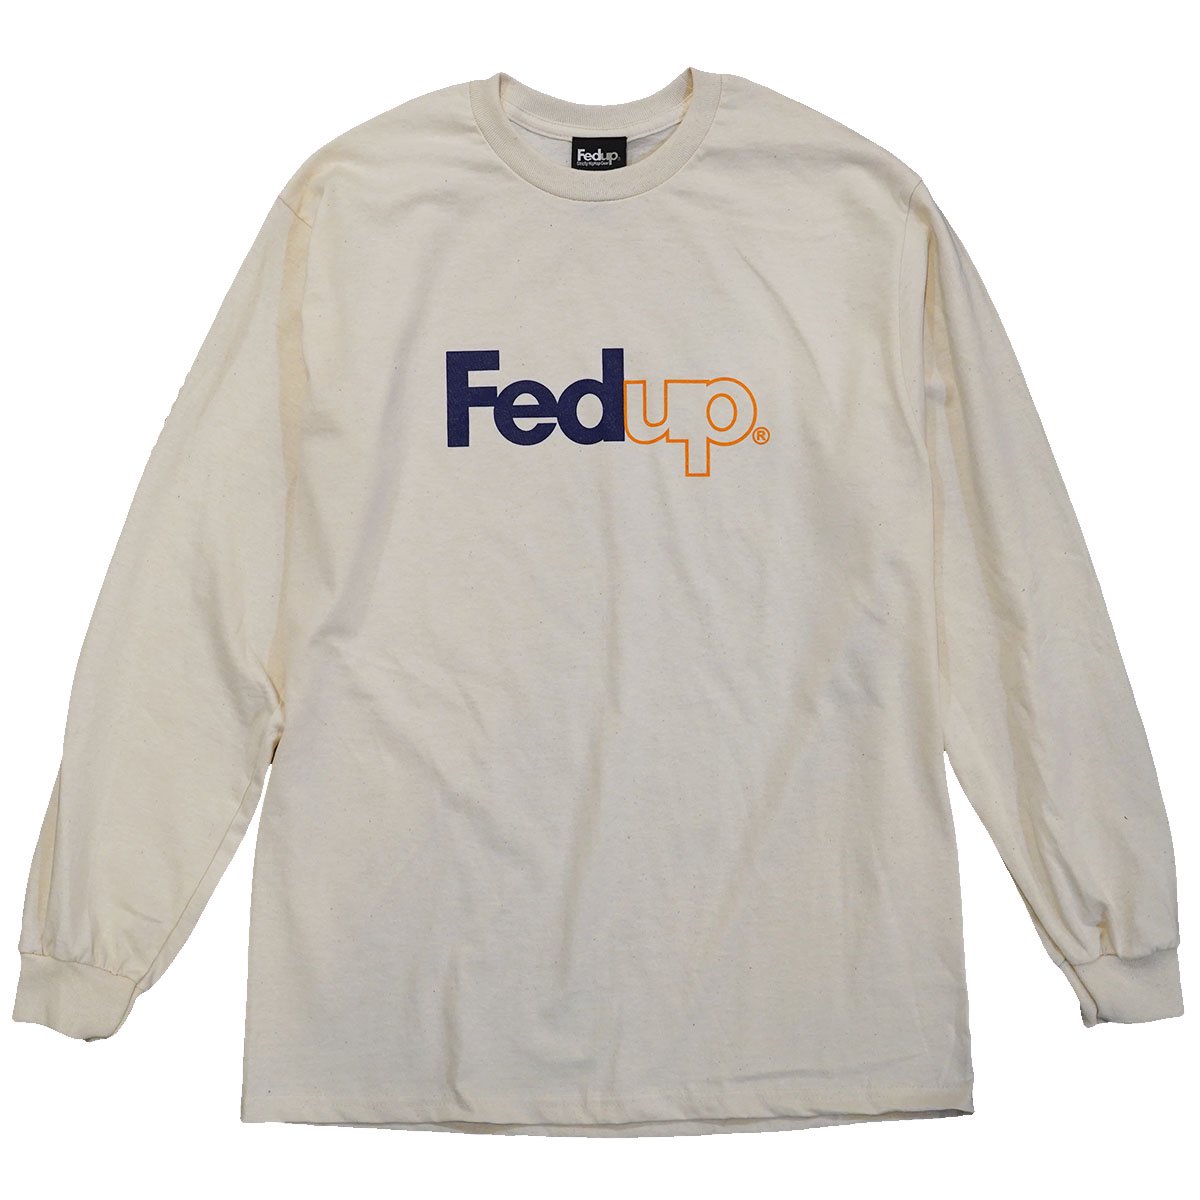 Fedup (フェドアップ) ロンT, ロングスリーブTシャツの取り扱い店舗